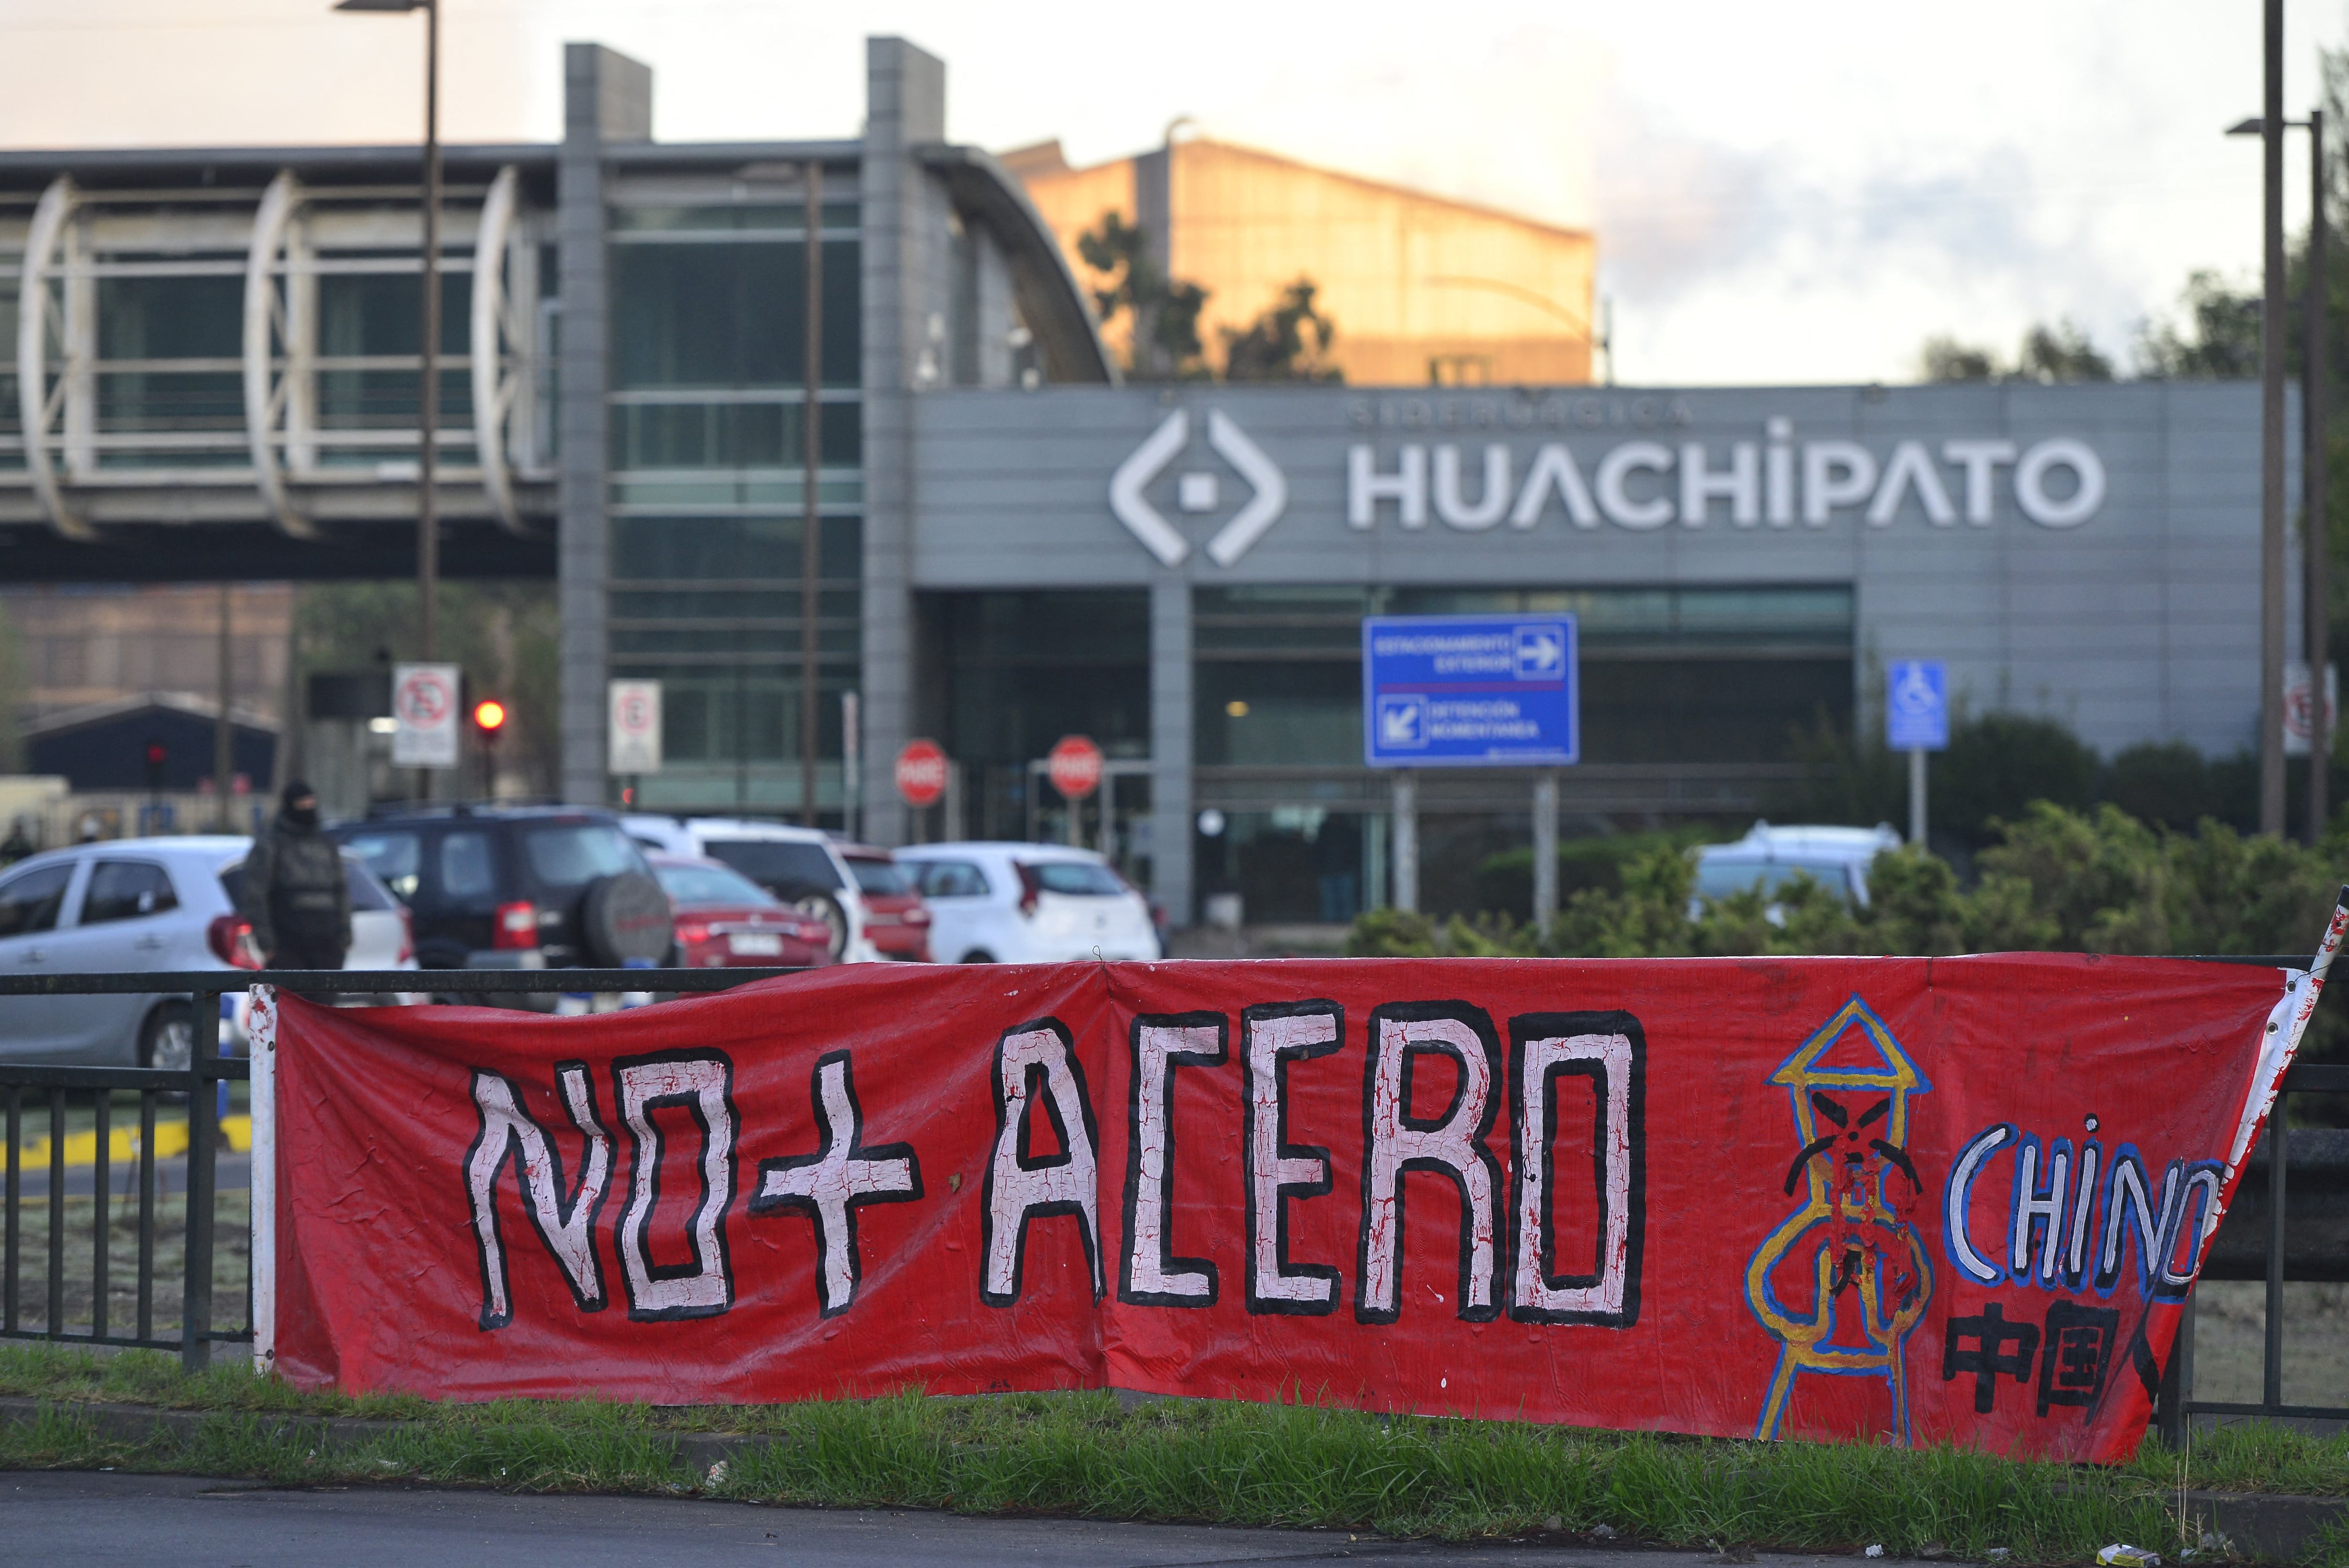 Una pancarta se exhibe en una valla durante una protesta realizada a inicios de abril por trabajadores siderúrgicos contra el eventual cierre de la planta siderúrgica de Huachipato ubicada en Chile, debido al incremento de las importaciones de acero chino.